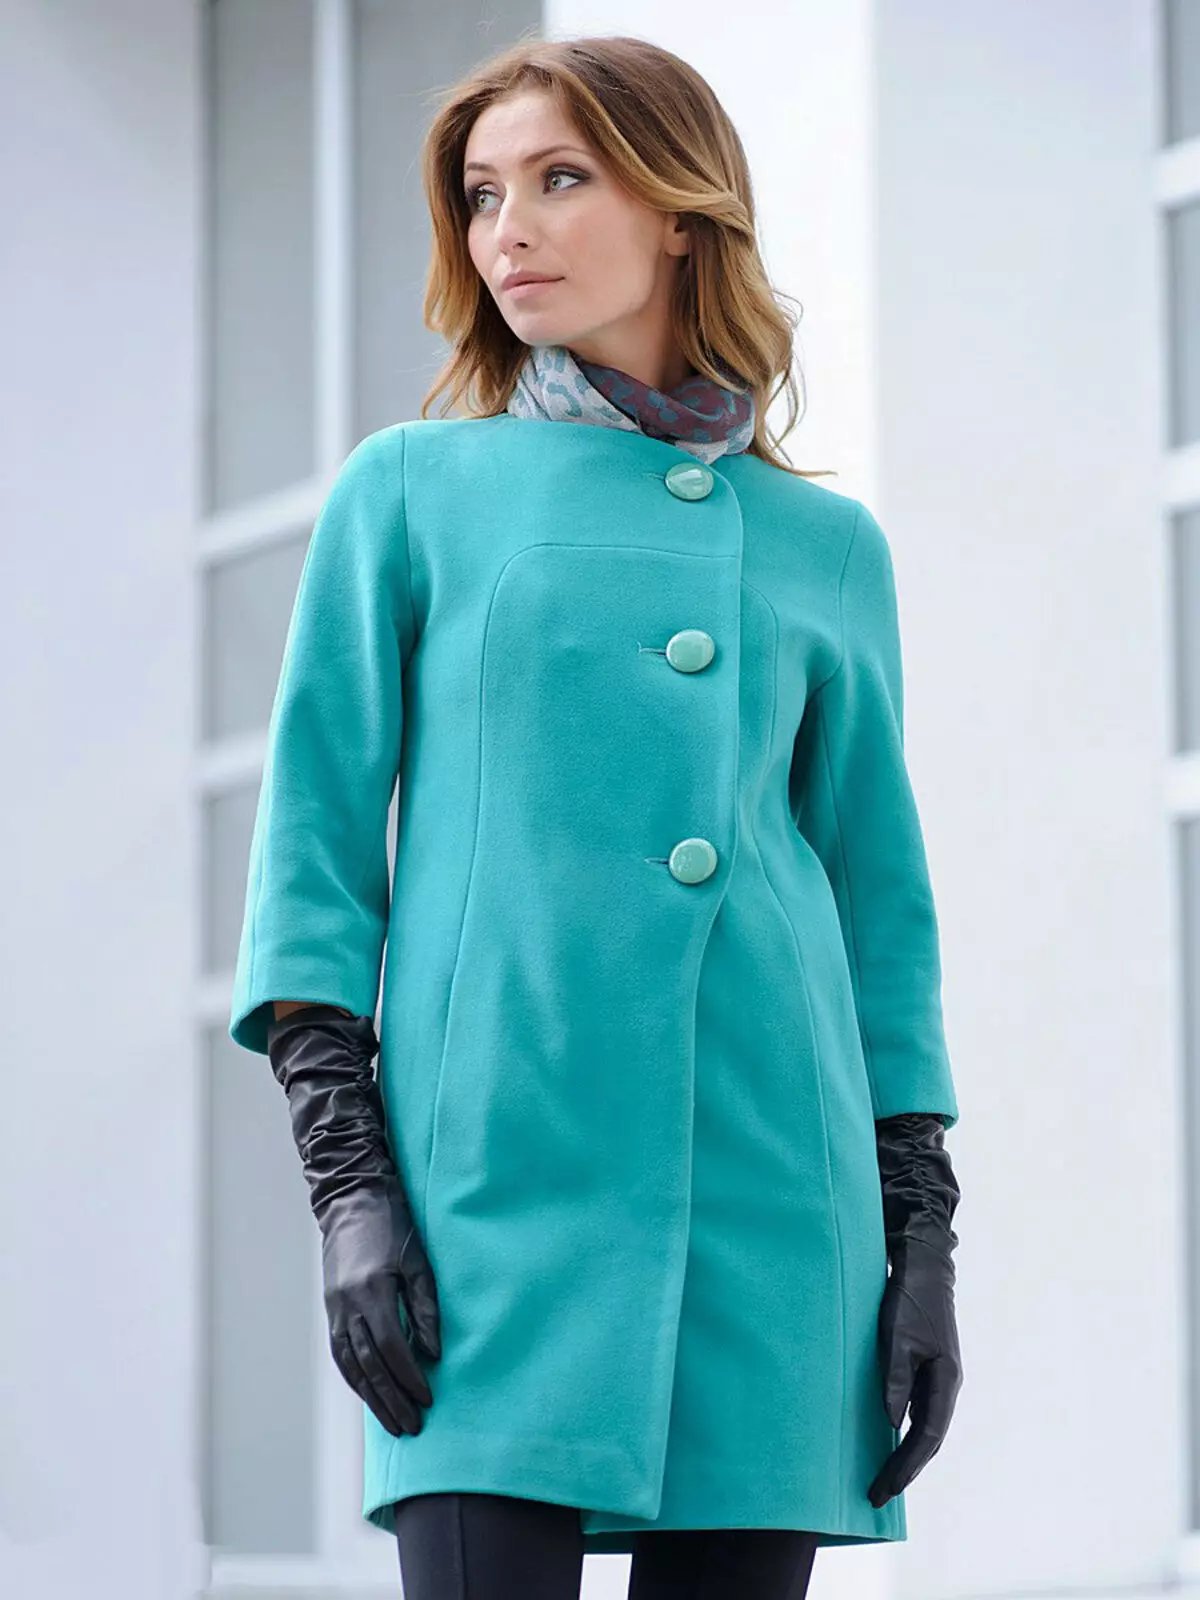 महिला कोट वसंत 2021 (356 तस्वीरें): रूसी निर्माताओं, मॉडल, शैलियों और शैलियों, रजाईदार, लघु, डंपिंग, चमड़े से 623_158